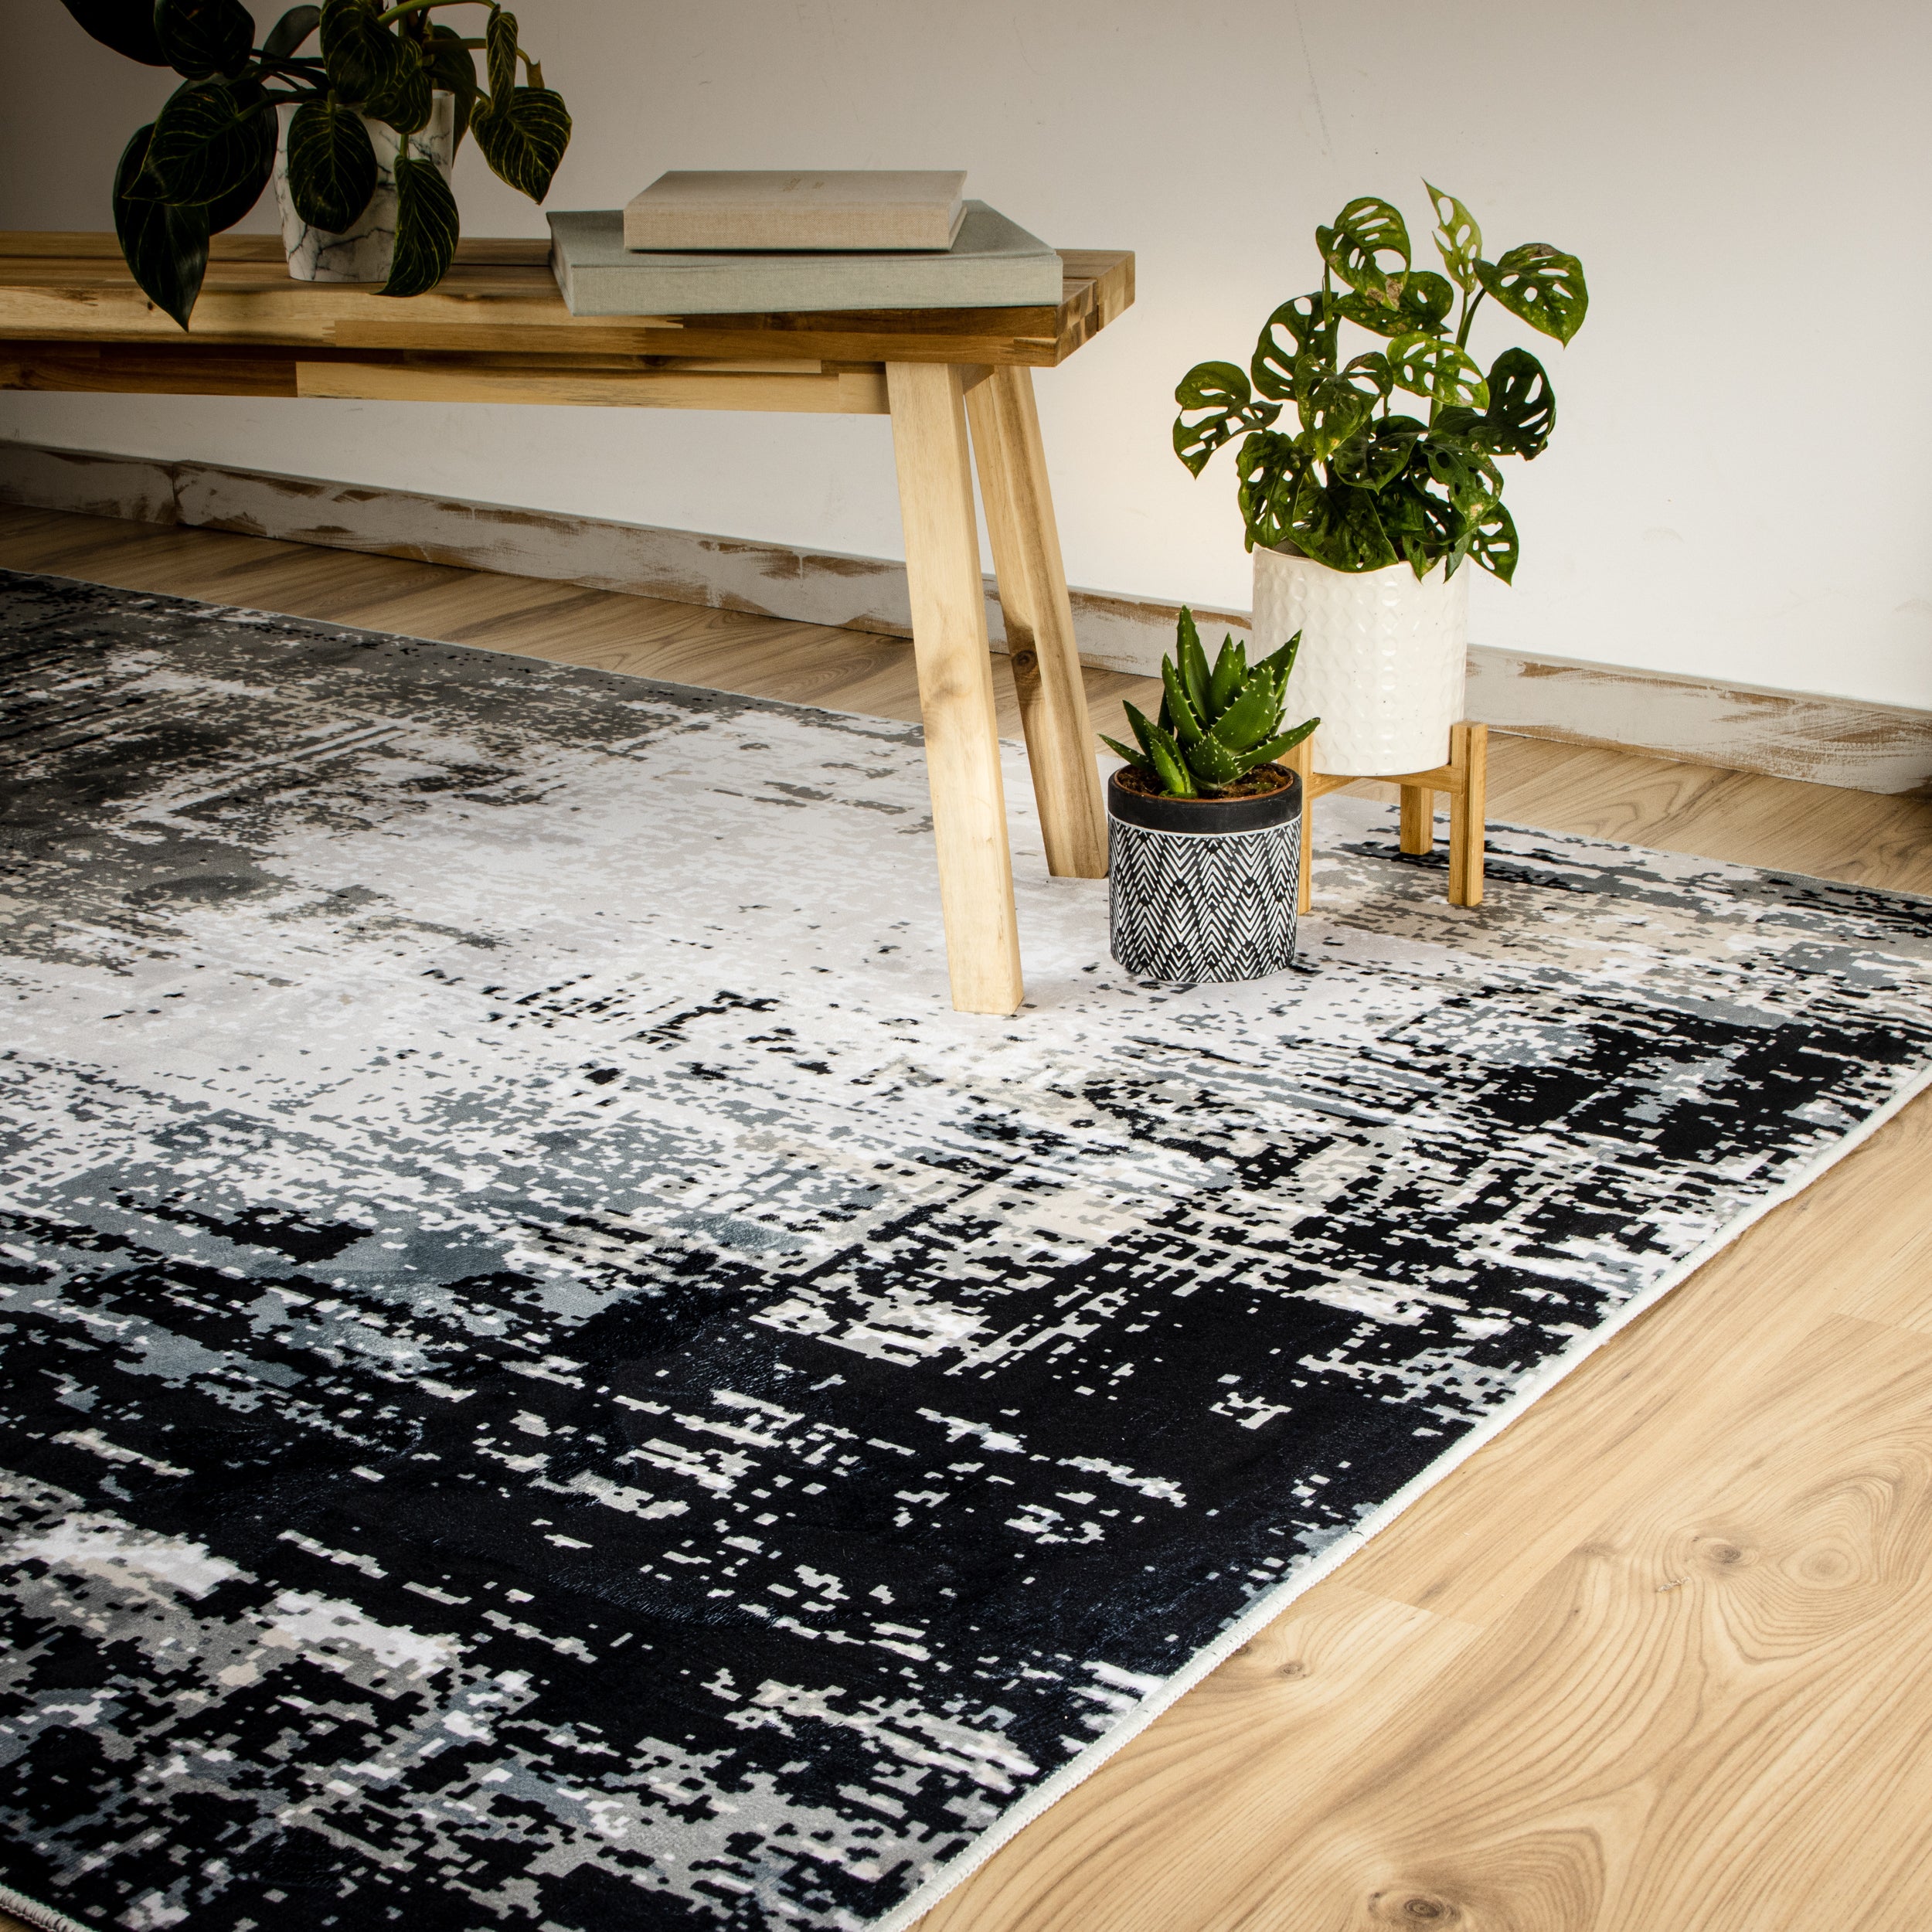 My Tampa 130 grey Teppich: Stilvolles Design, praktische Funktionalität für dein Zuhause